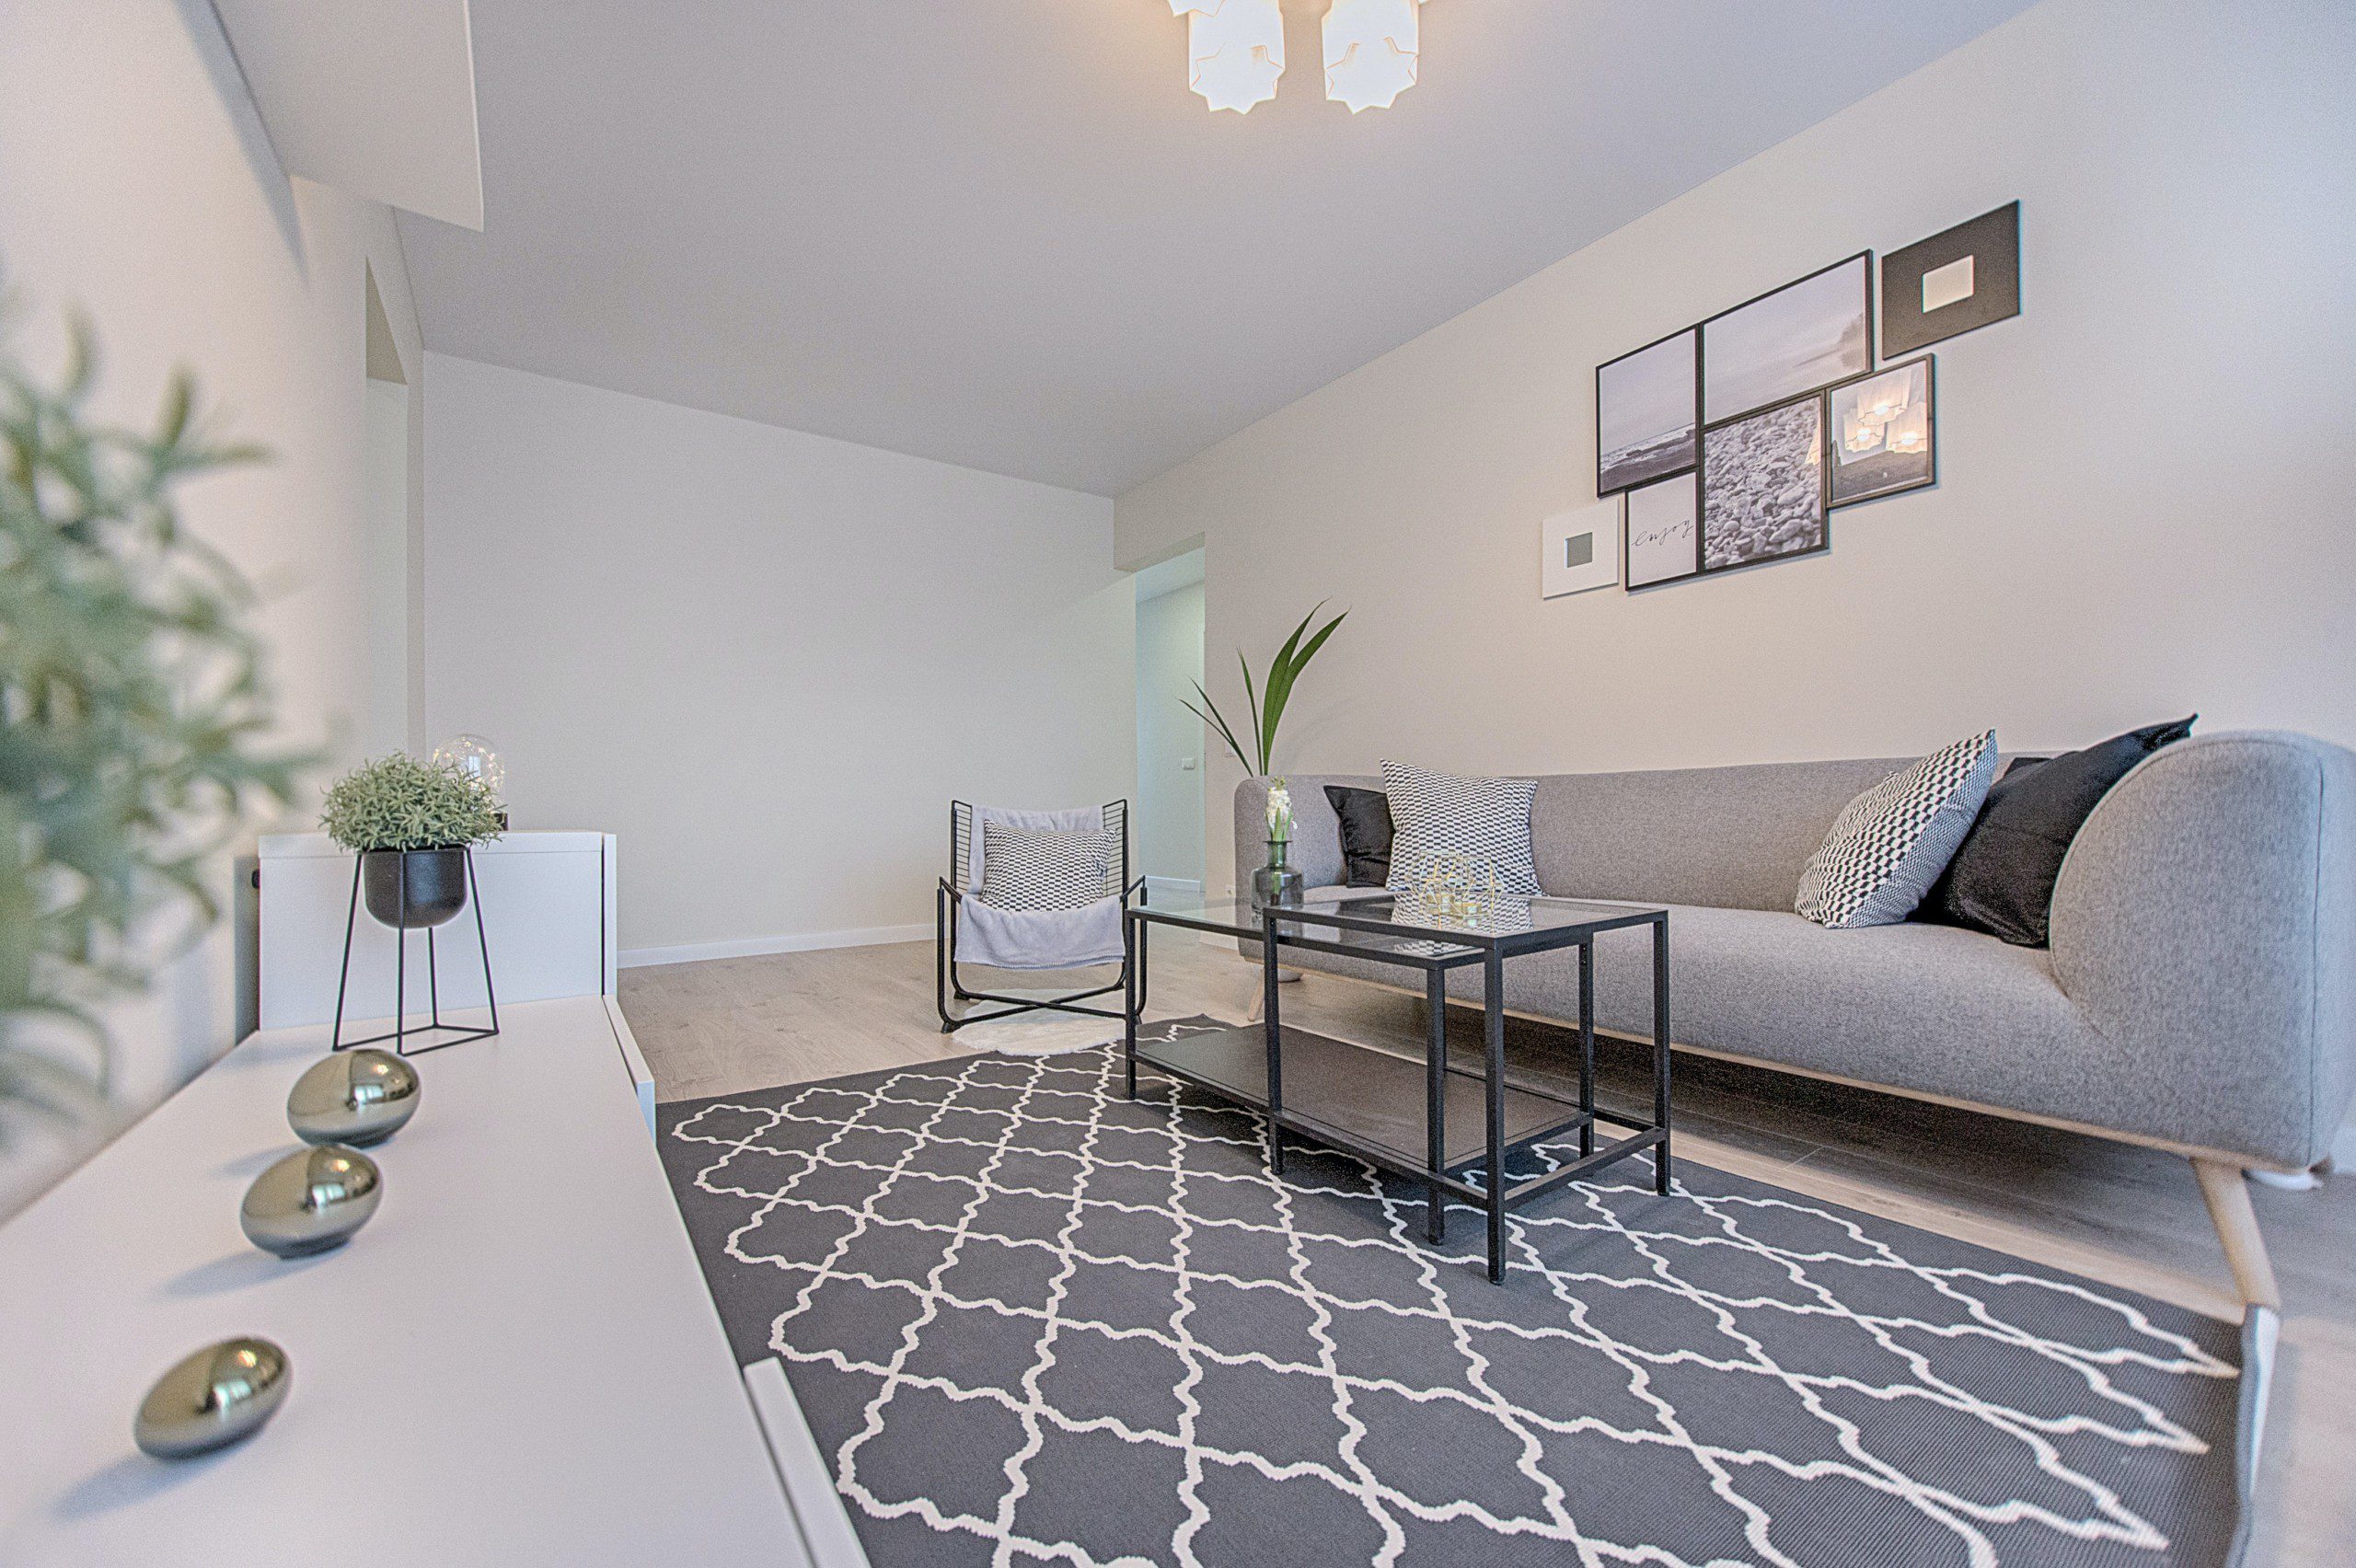 Imagem de uma sala de estar com tapete cinza estampado com decoração minimalista.